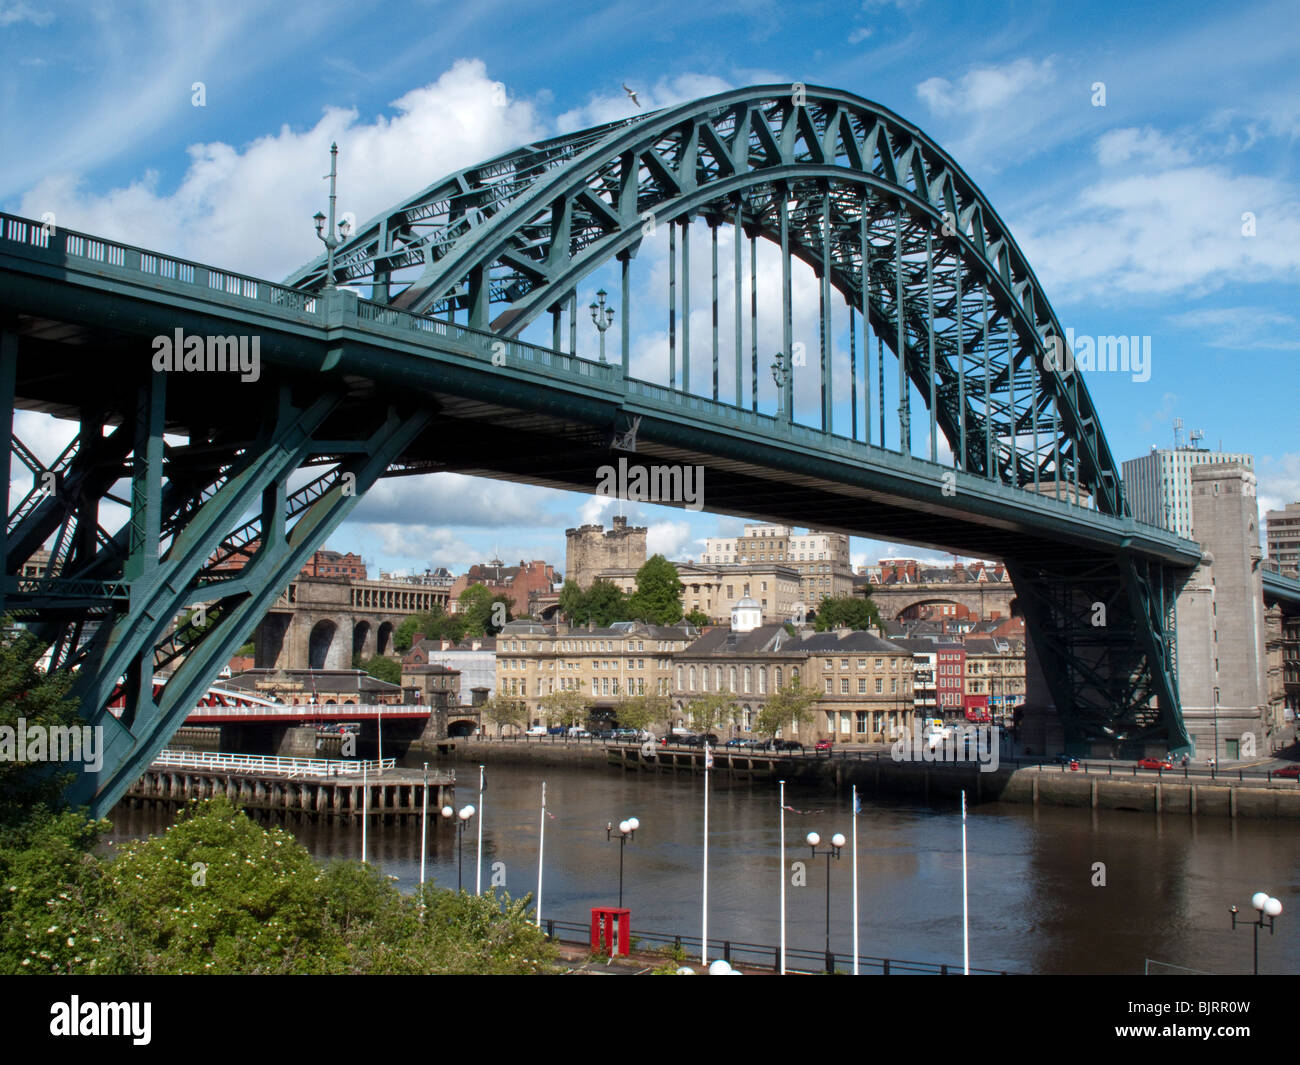 The Tyne Bridge Newcastle upon Tyne, Tyne and Wear, UK Stock Photo